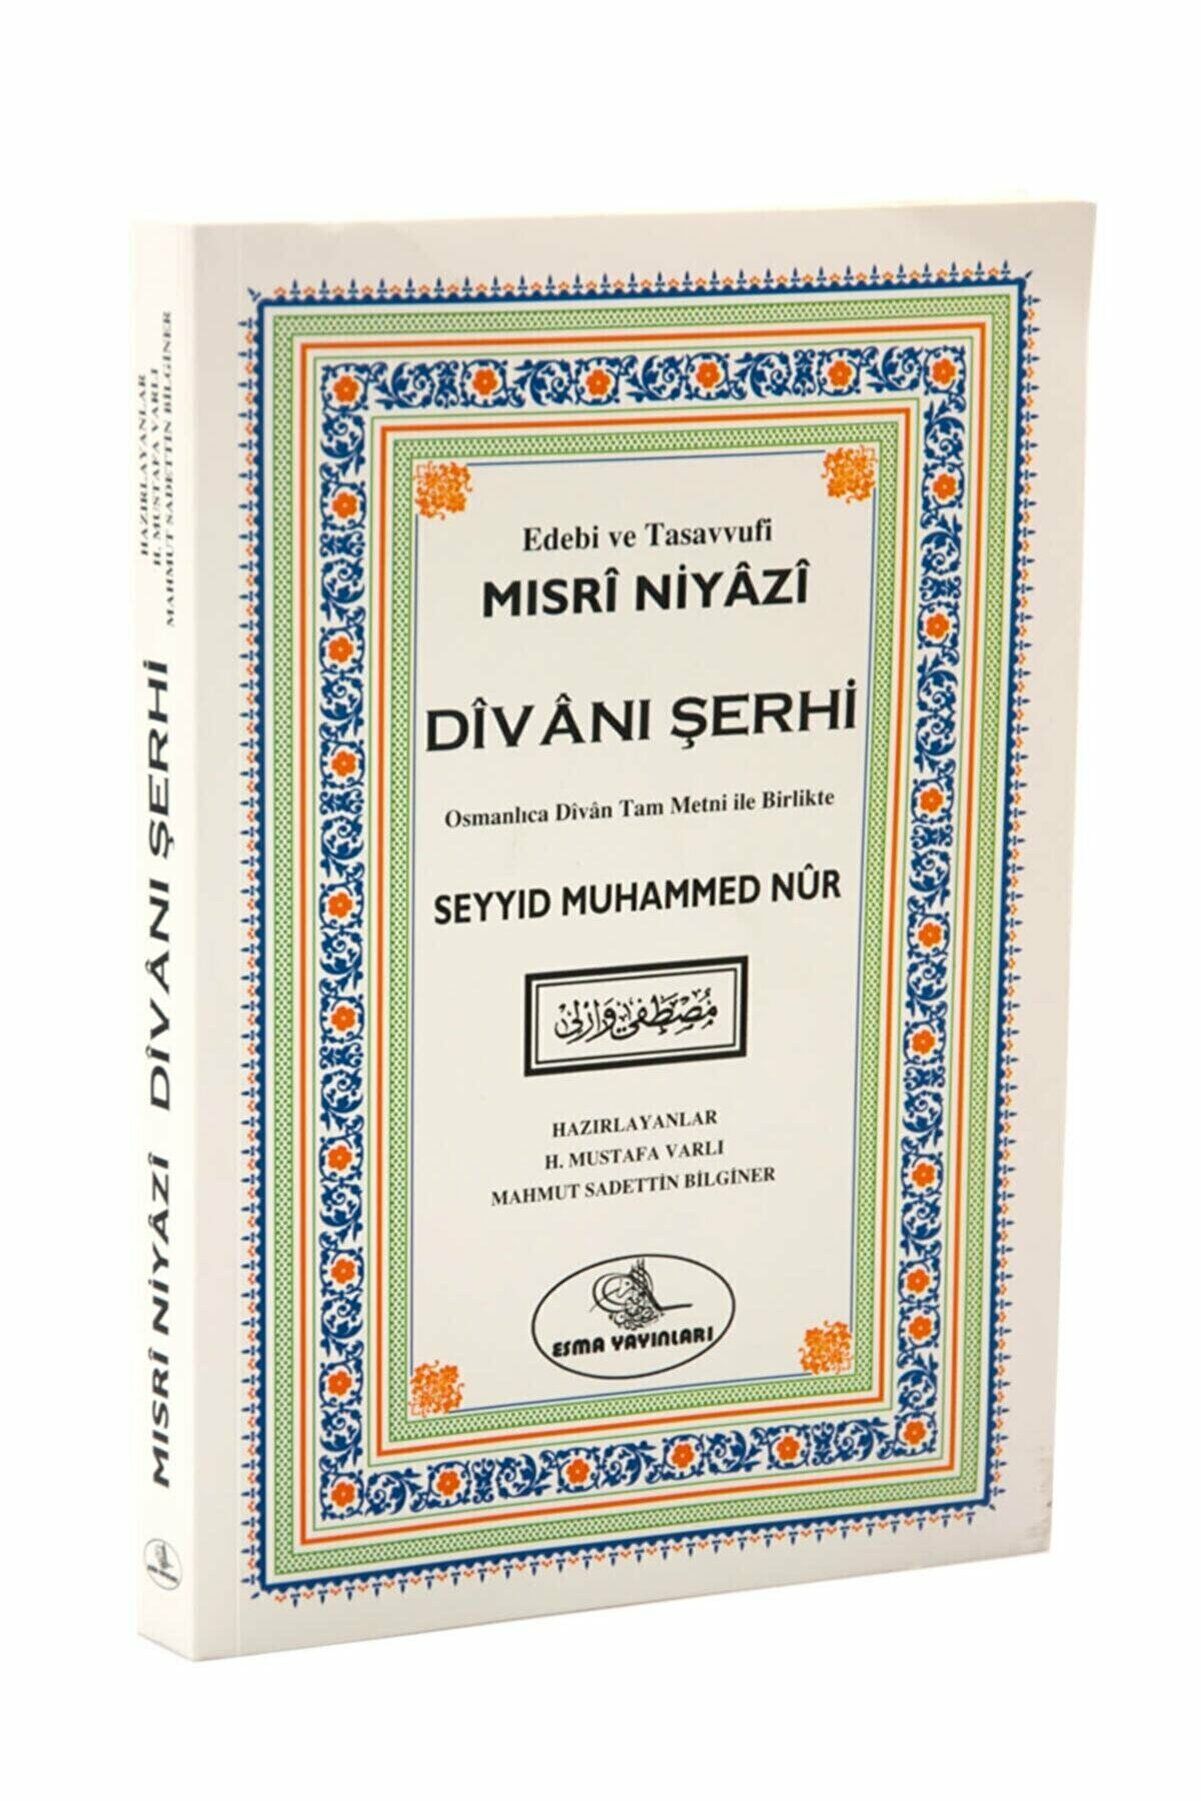 Mısri Niyazi Divanı Şerhi, Seyyid Muhammed Nur